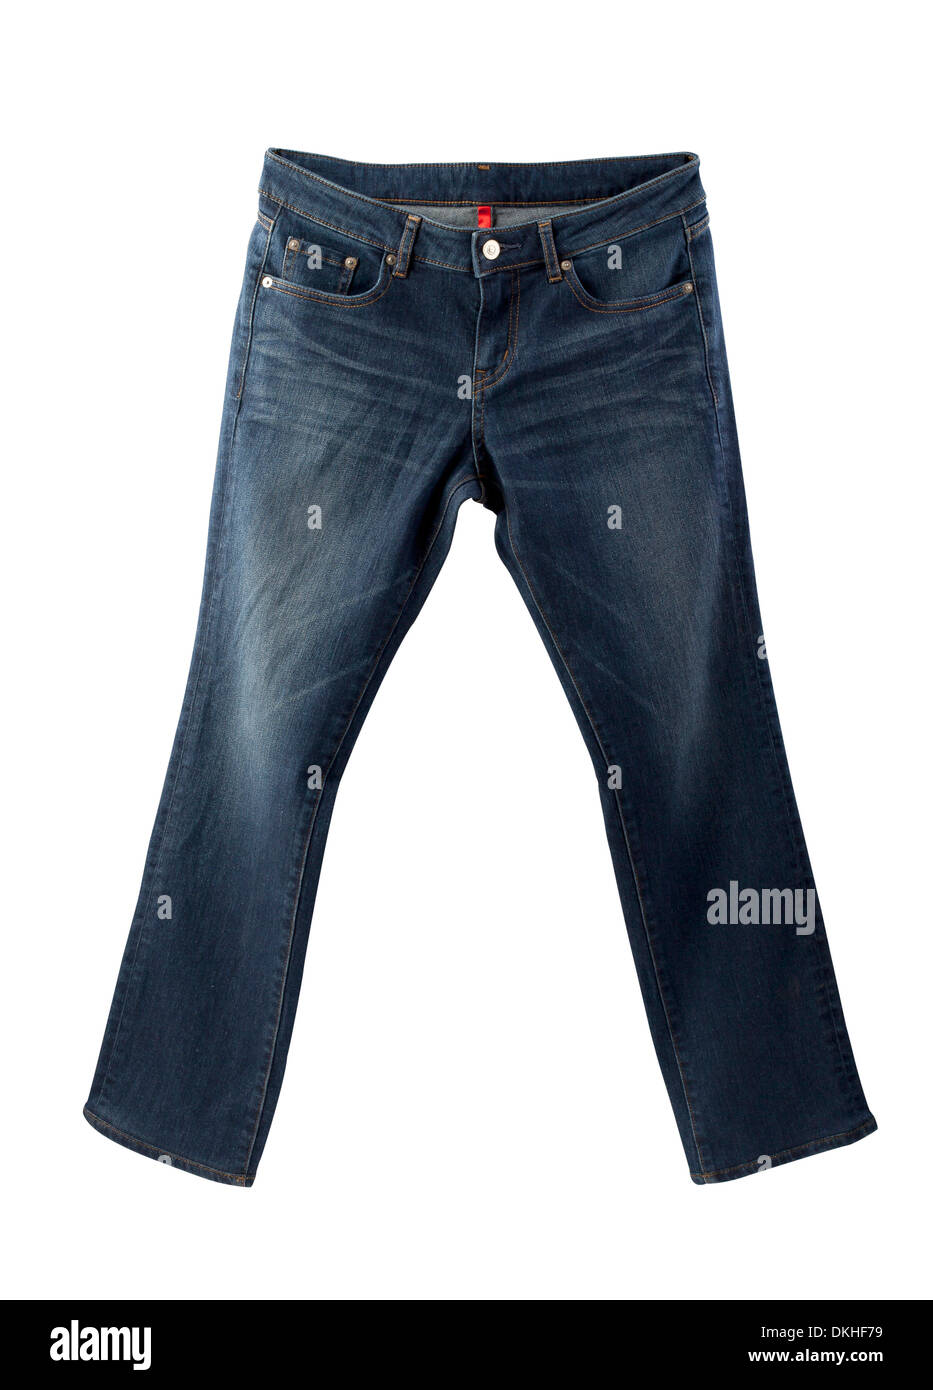 dunkelblaue Jeans isoliert auf weißem Hintergrund Stockfoto